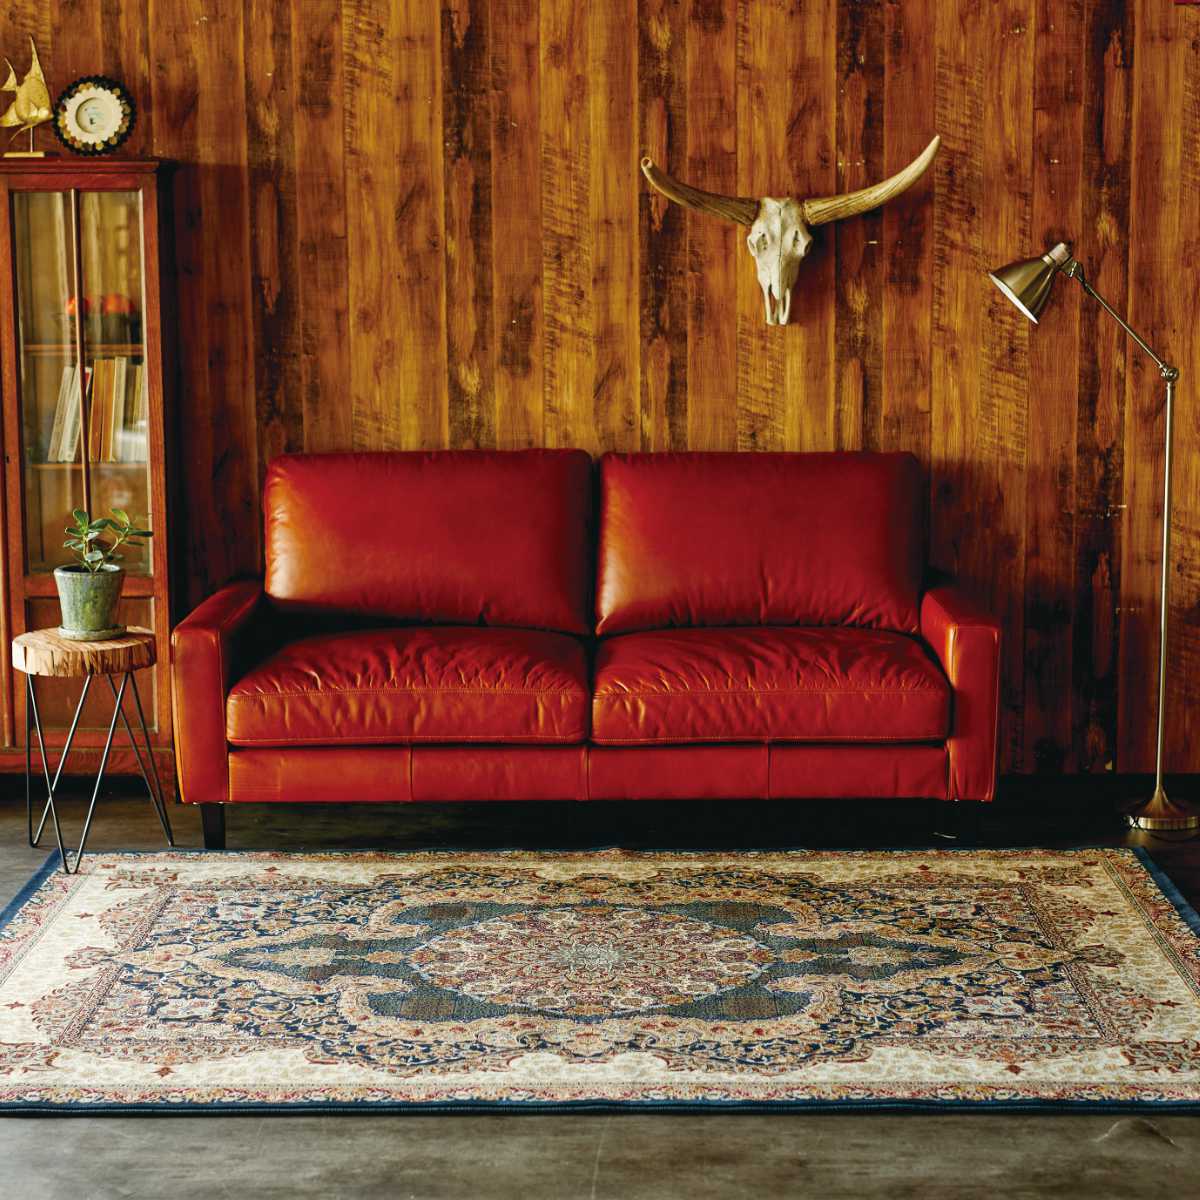 【再入荷人気】ラグ 200×250cm 色-レッド /エジプト製 ウィルトン織り クラシックデザイン 絨毯 床暖房ホットカーペット対応 ラグ一般